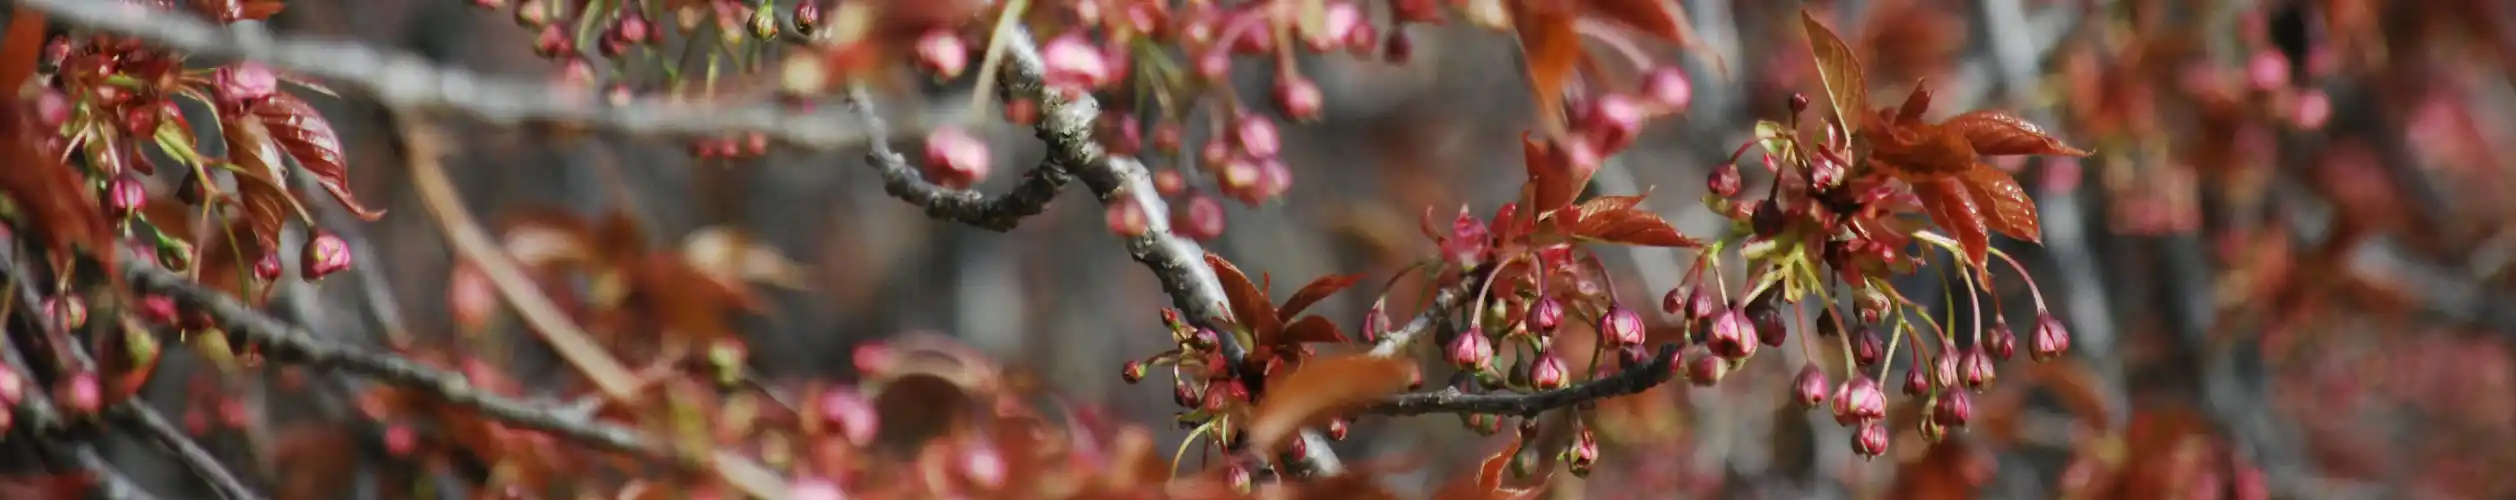 Viele kleine Knospen und die ersten jungen Blätter der japanischen Kirsche